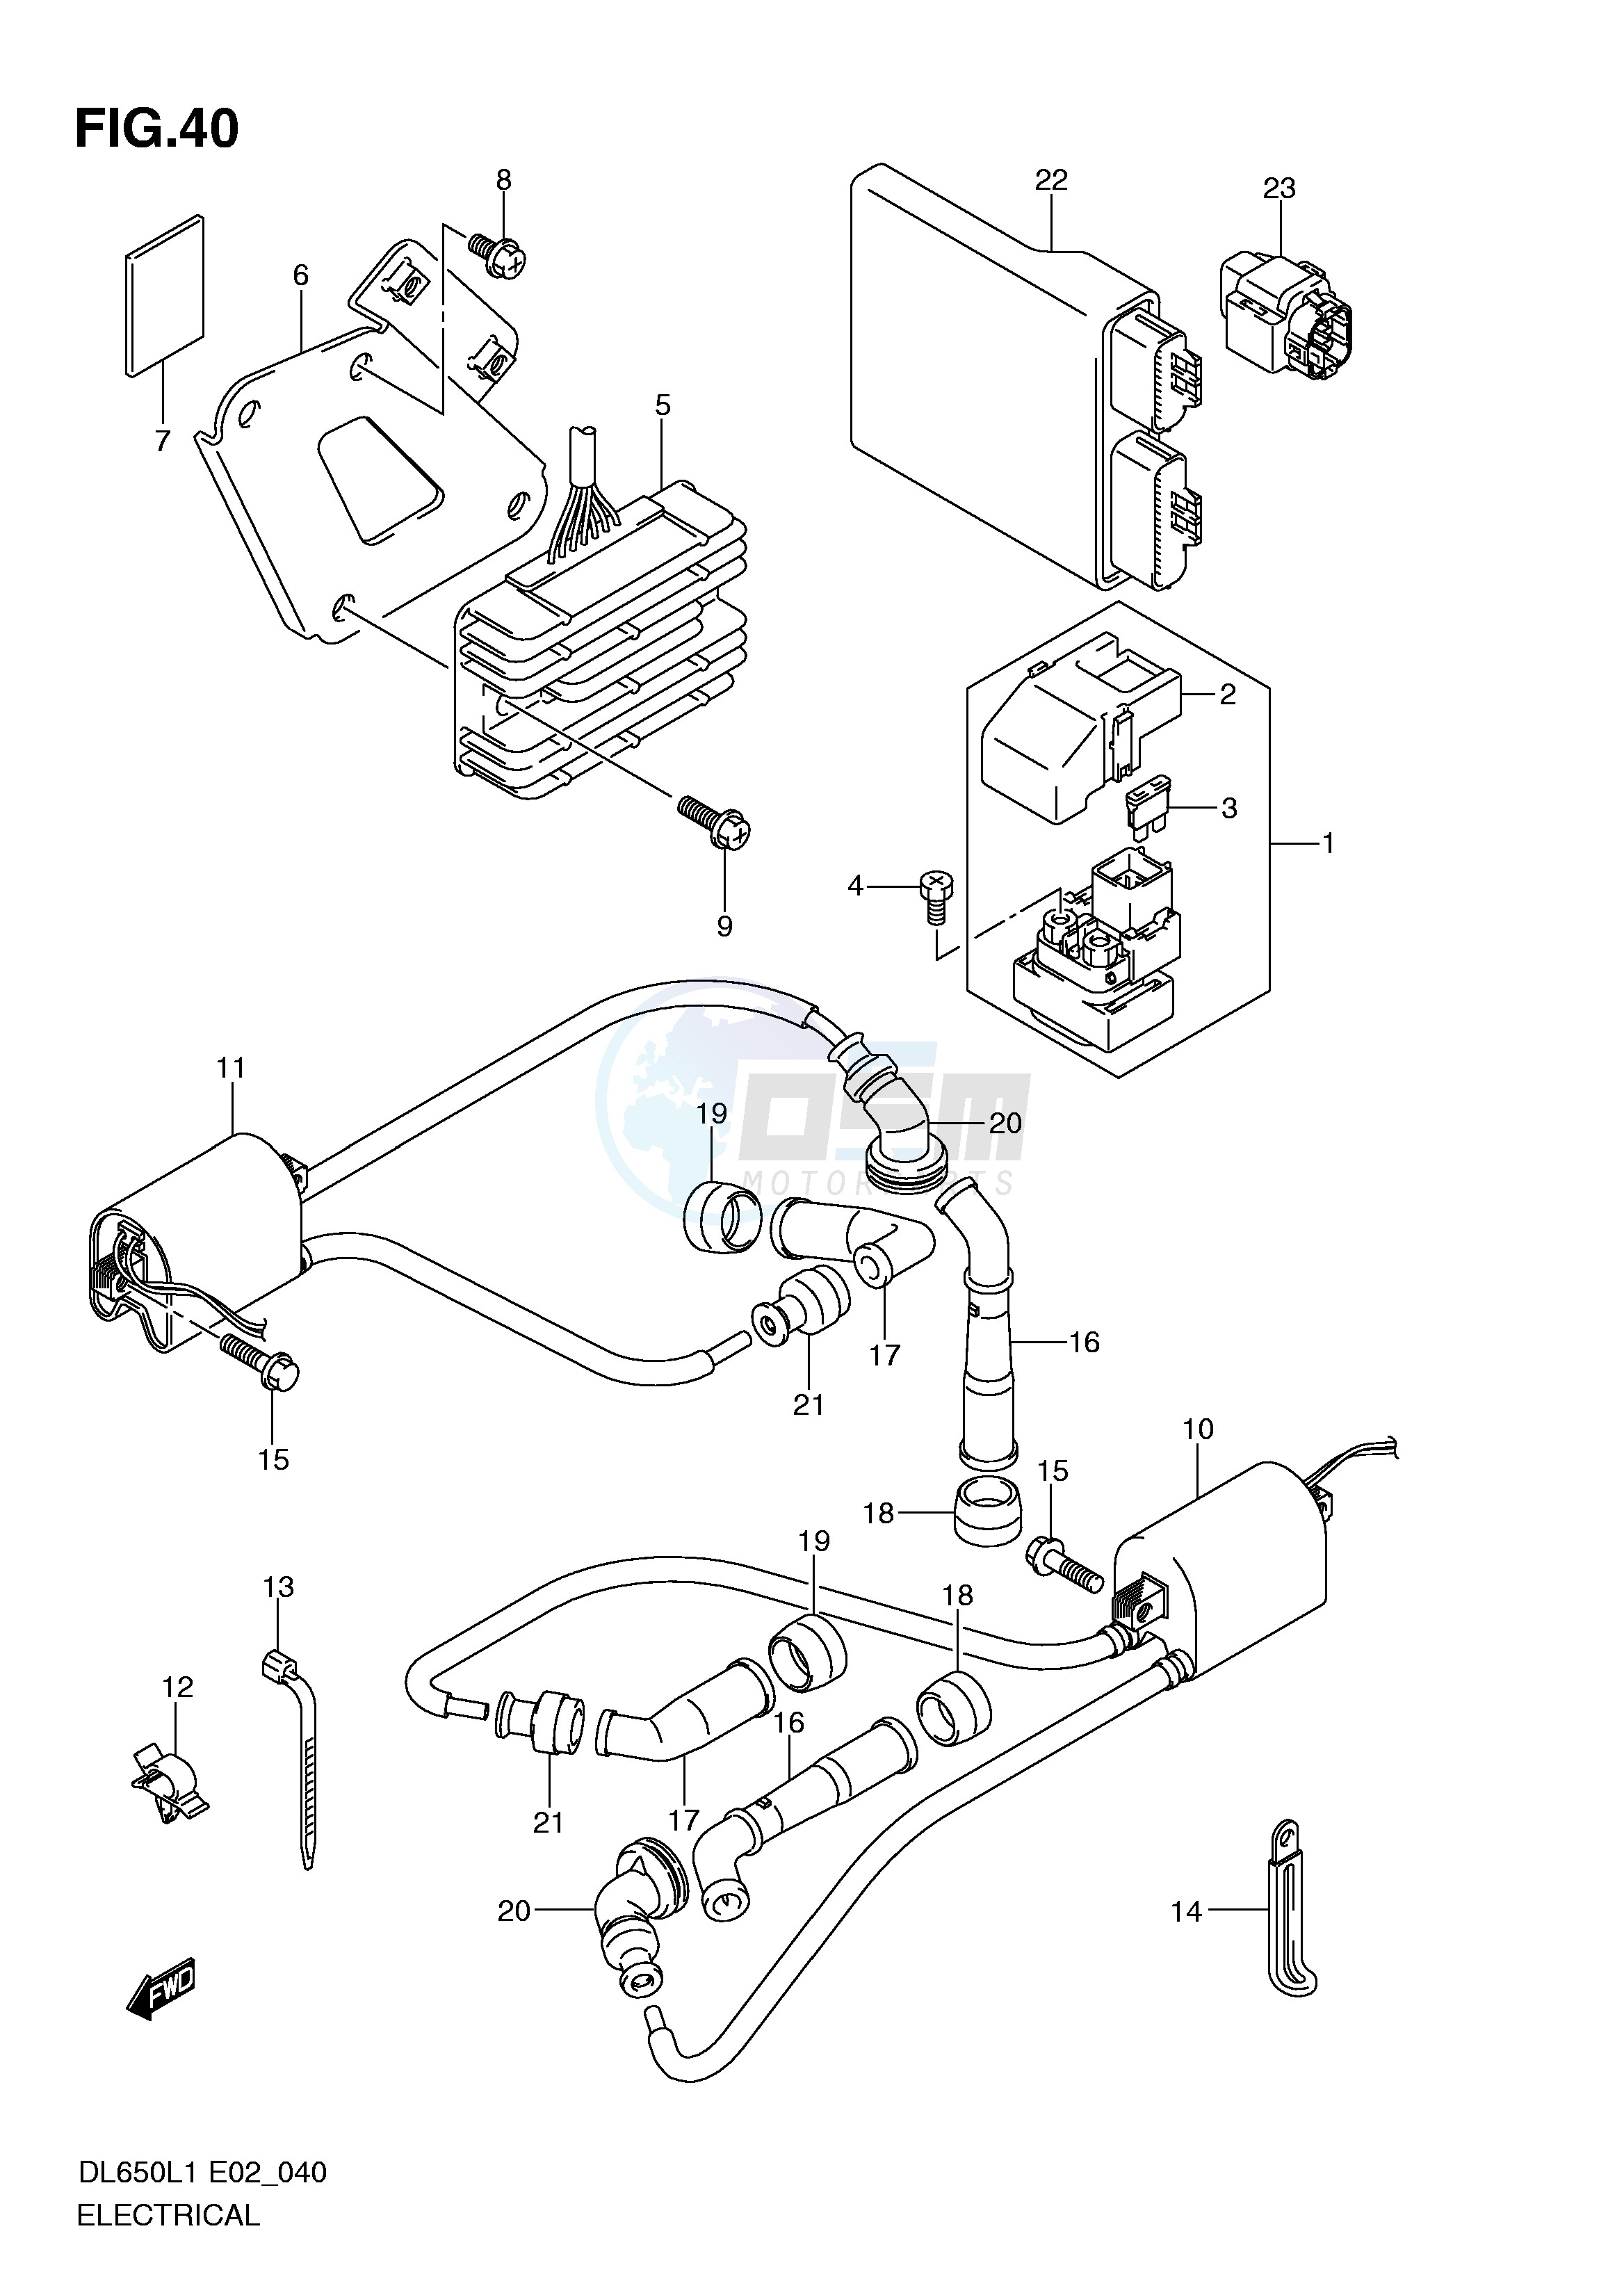 ELECTRICAL (DL650AL1 E24) blueprint